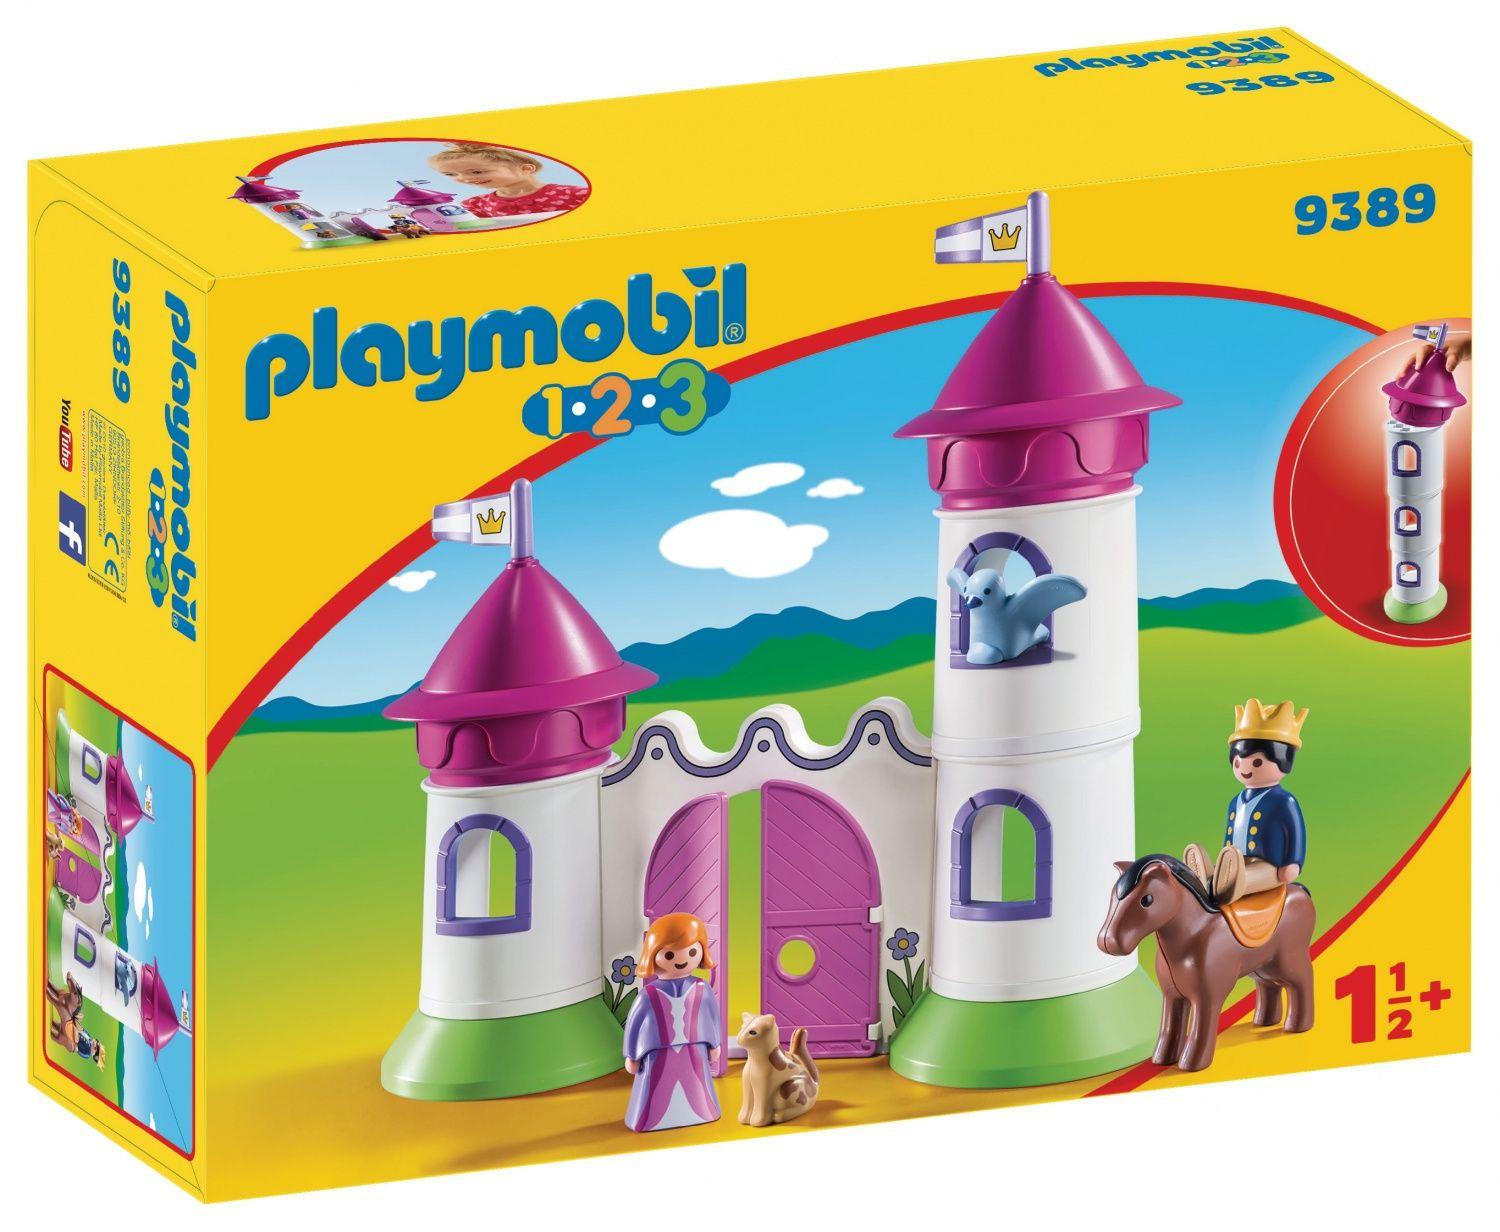 9527 Playmobil Maison de vacances 2018 - Playmobil - Achat & prix